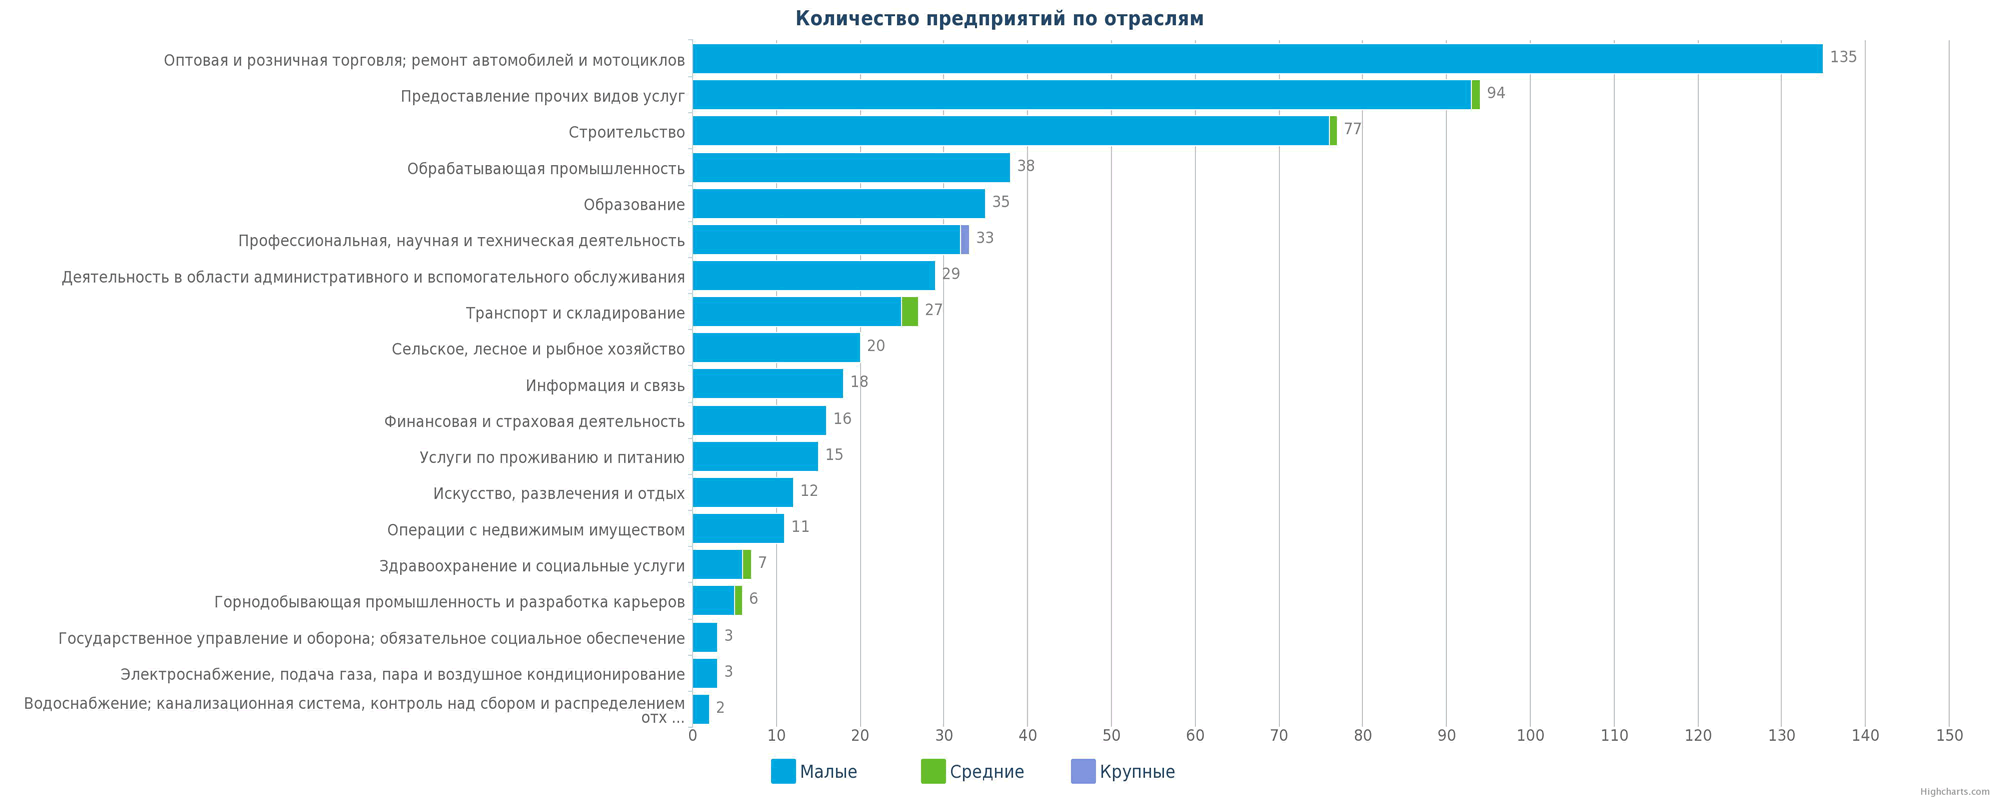 Количество новых организаций в справочнике Казахстана по отраслям